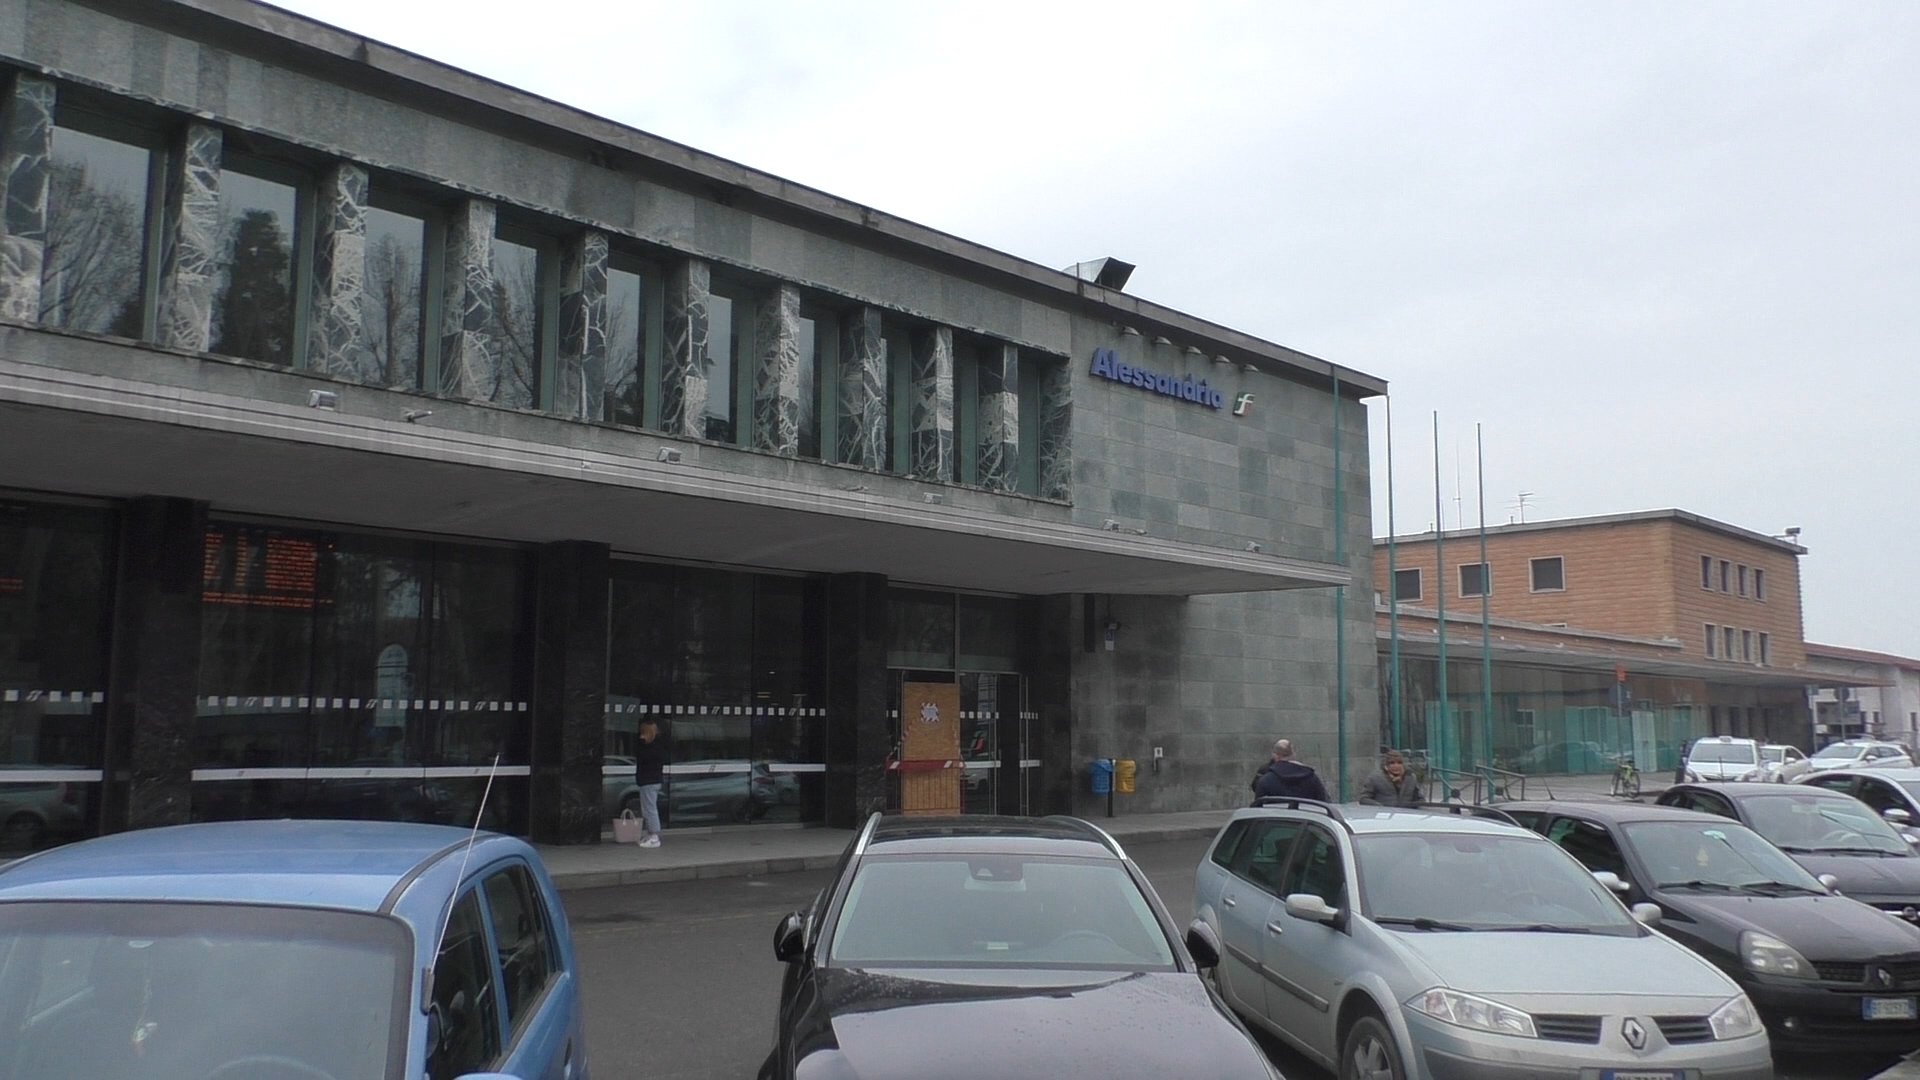 Furto su un’auto alla stazione di Alessandria: divieto di ritorno in città fino al 2025 per il responsabile